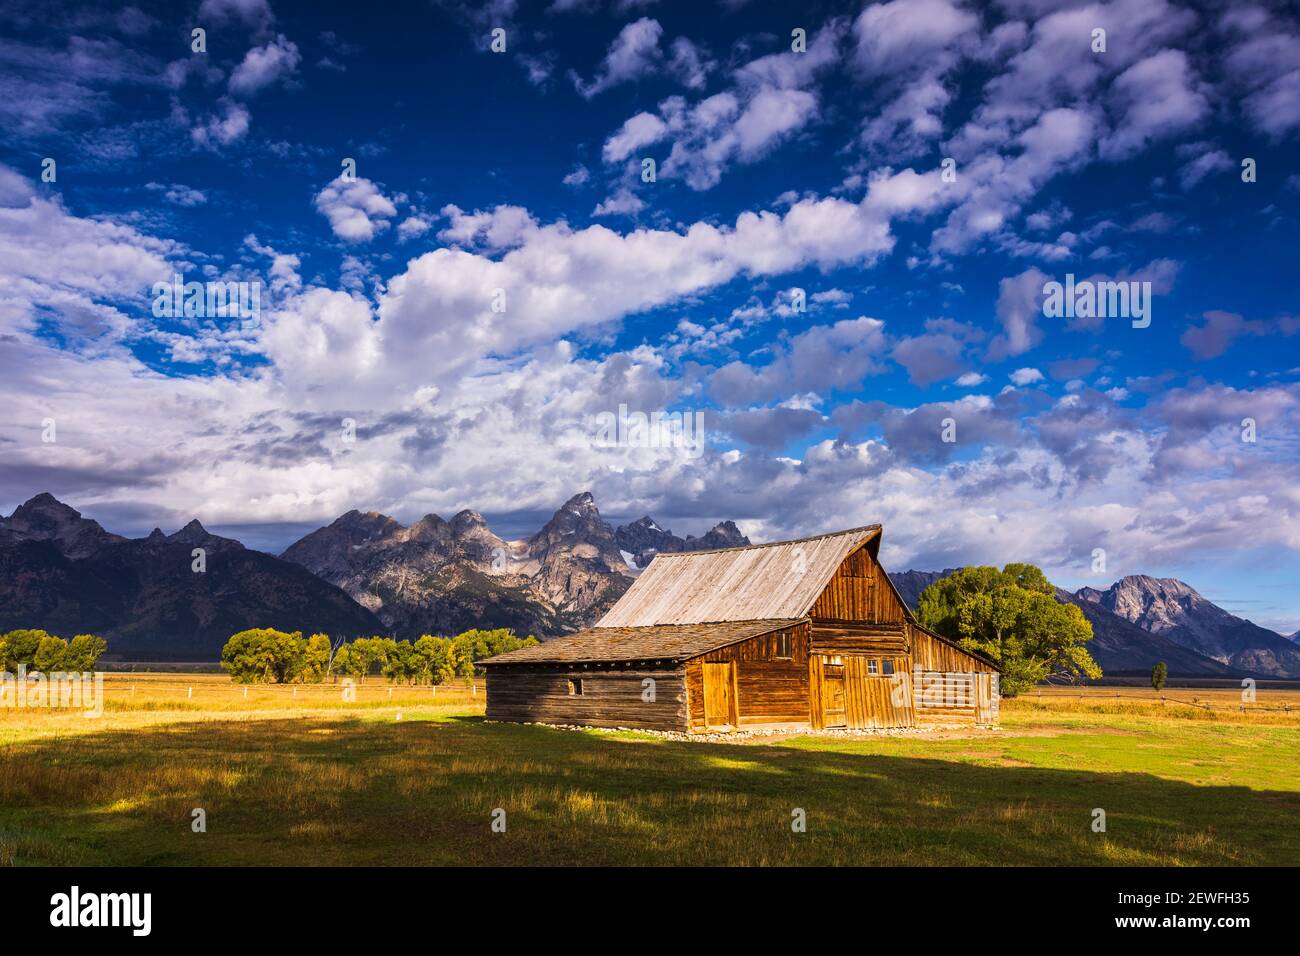 The Moulton Barn on Mormon Row, Grand Teton National Park, Wyoming USA Stockfoto